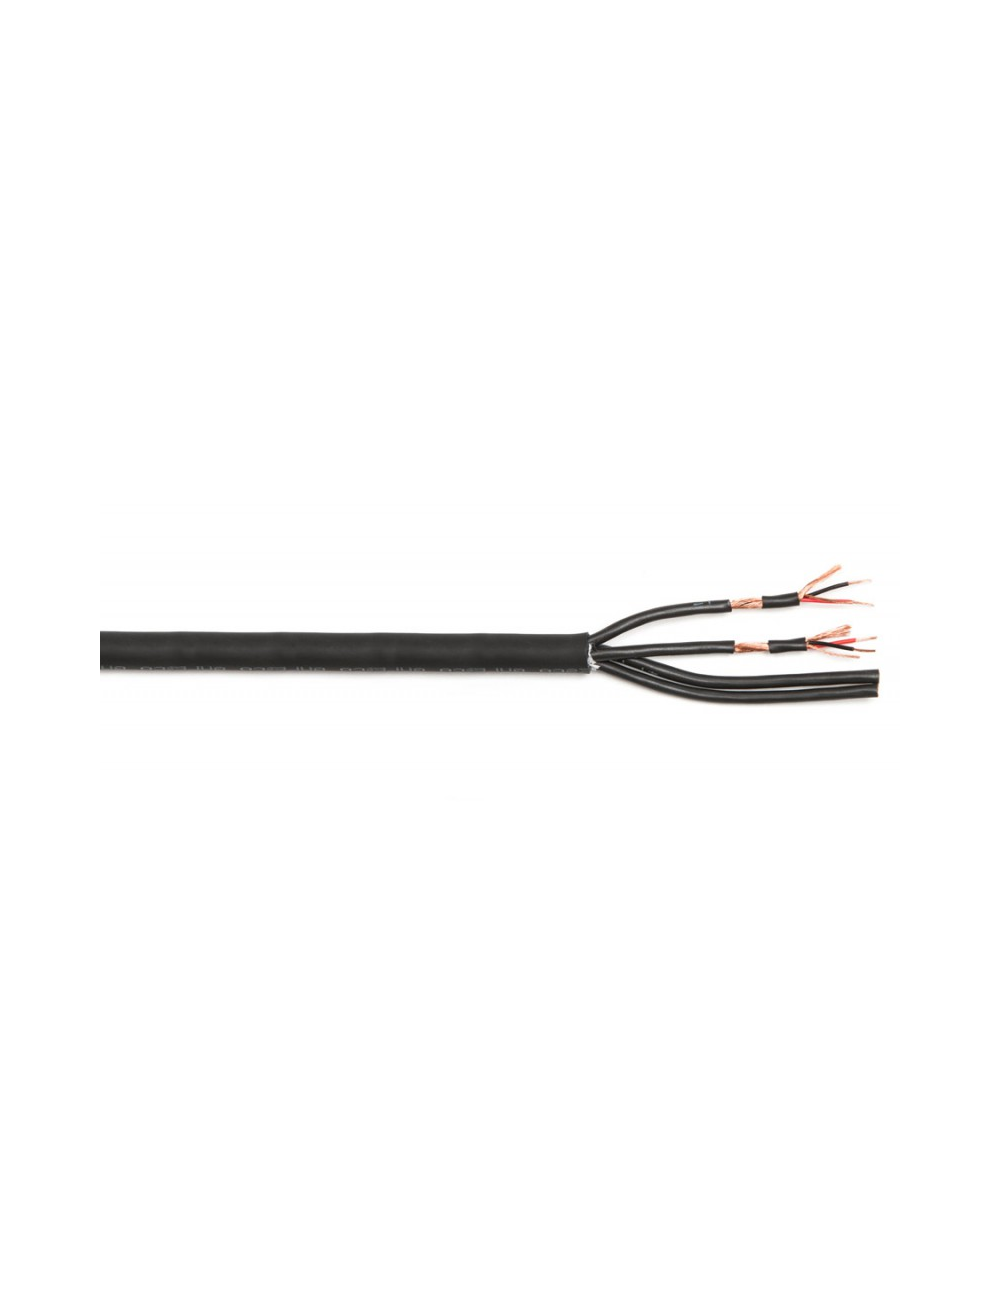 Multipair cable 4 pairs (per meter)